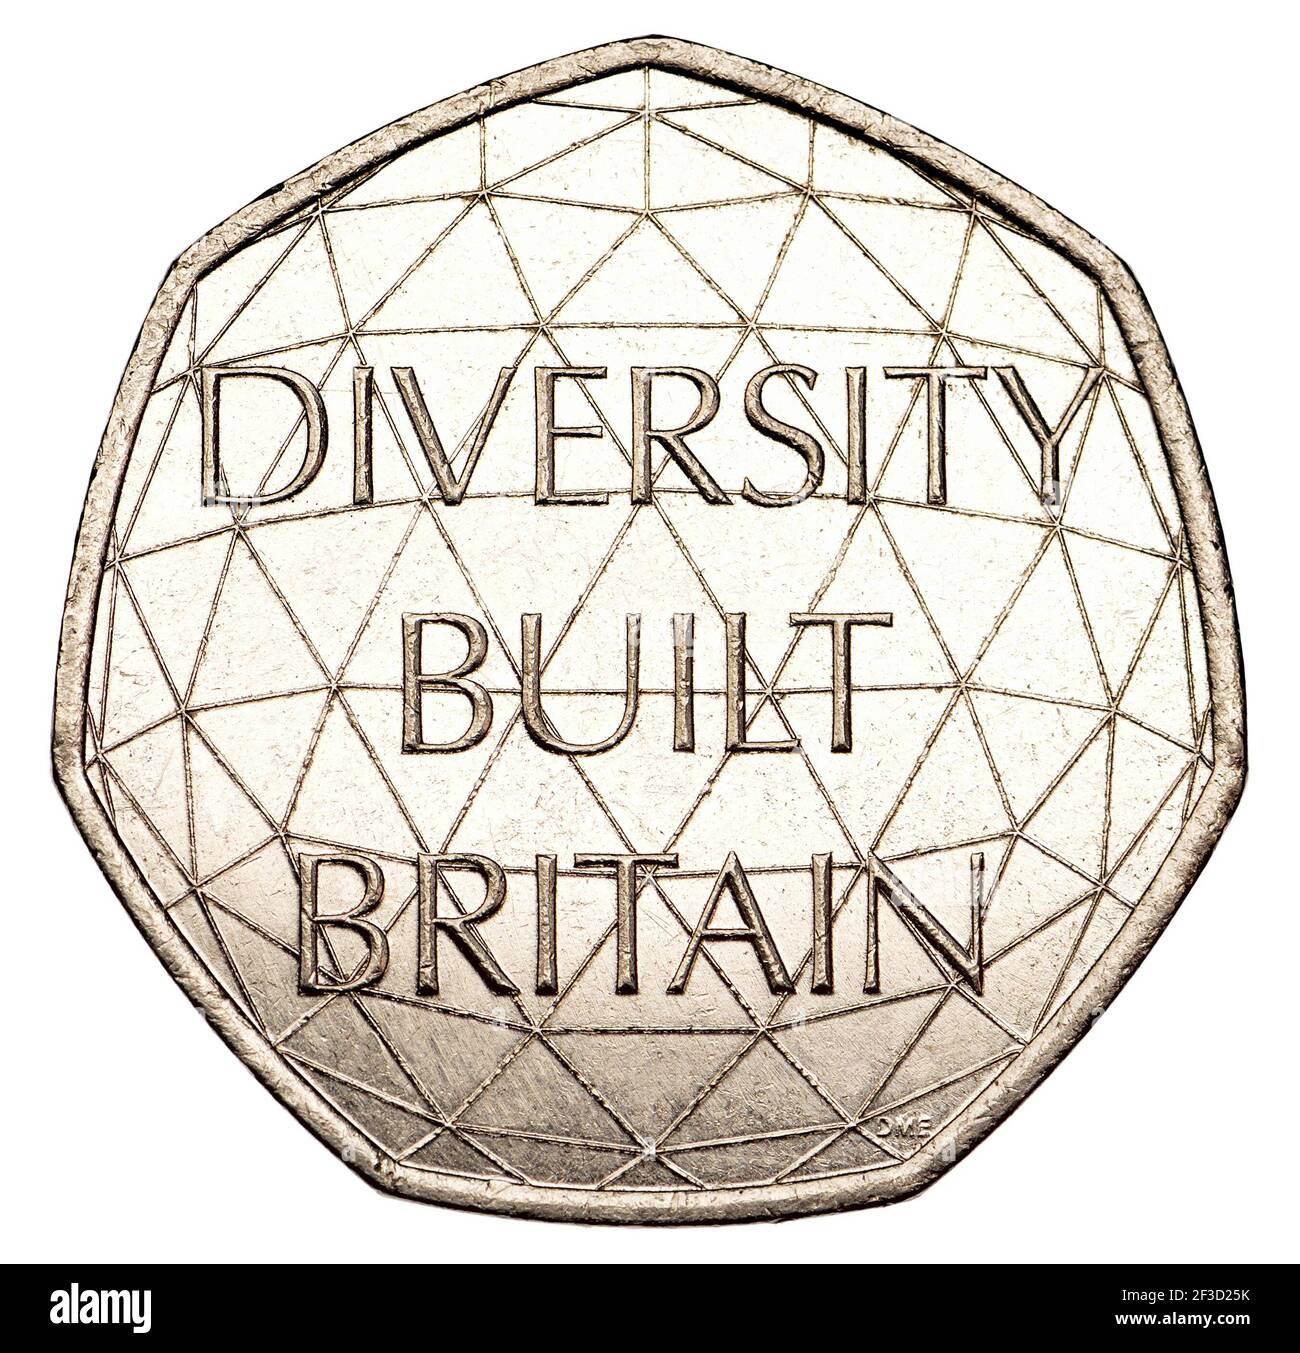 Moneta commemorativa britannica 50p (2020) Diversity Built Britain (Dominique Evans, designer) Foto Stock